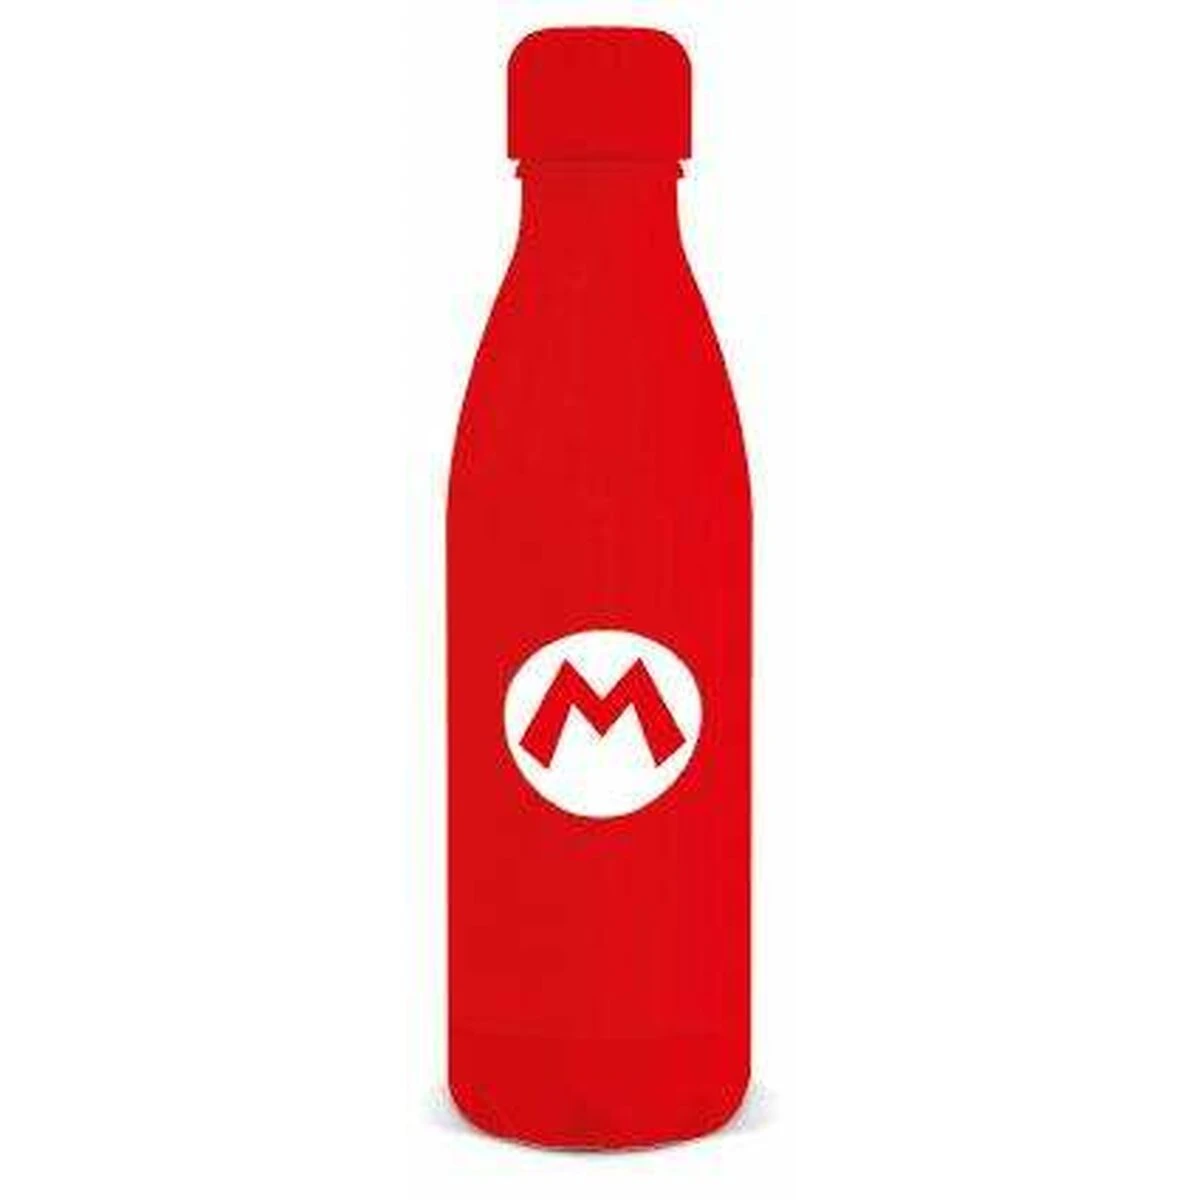 Rode fles met M-logo